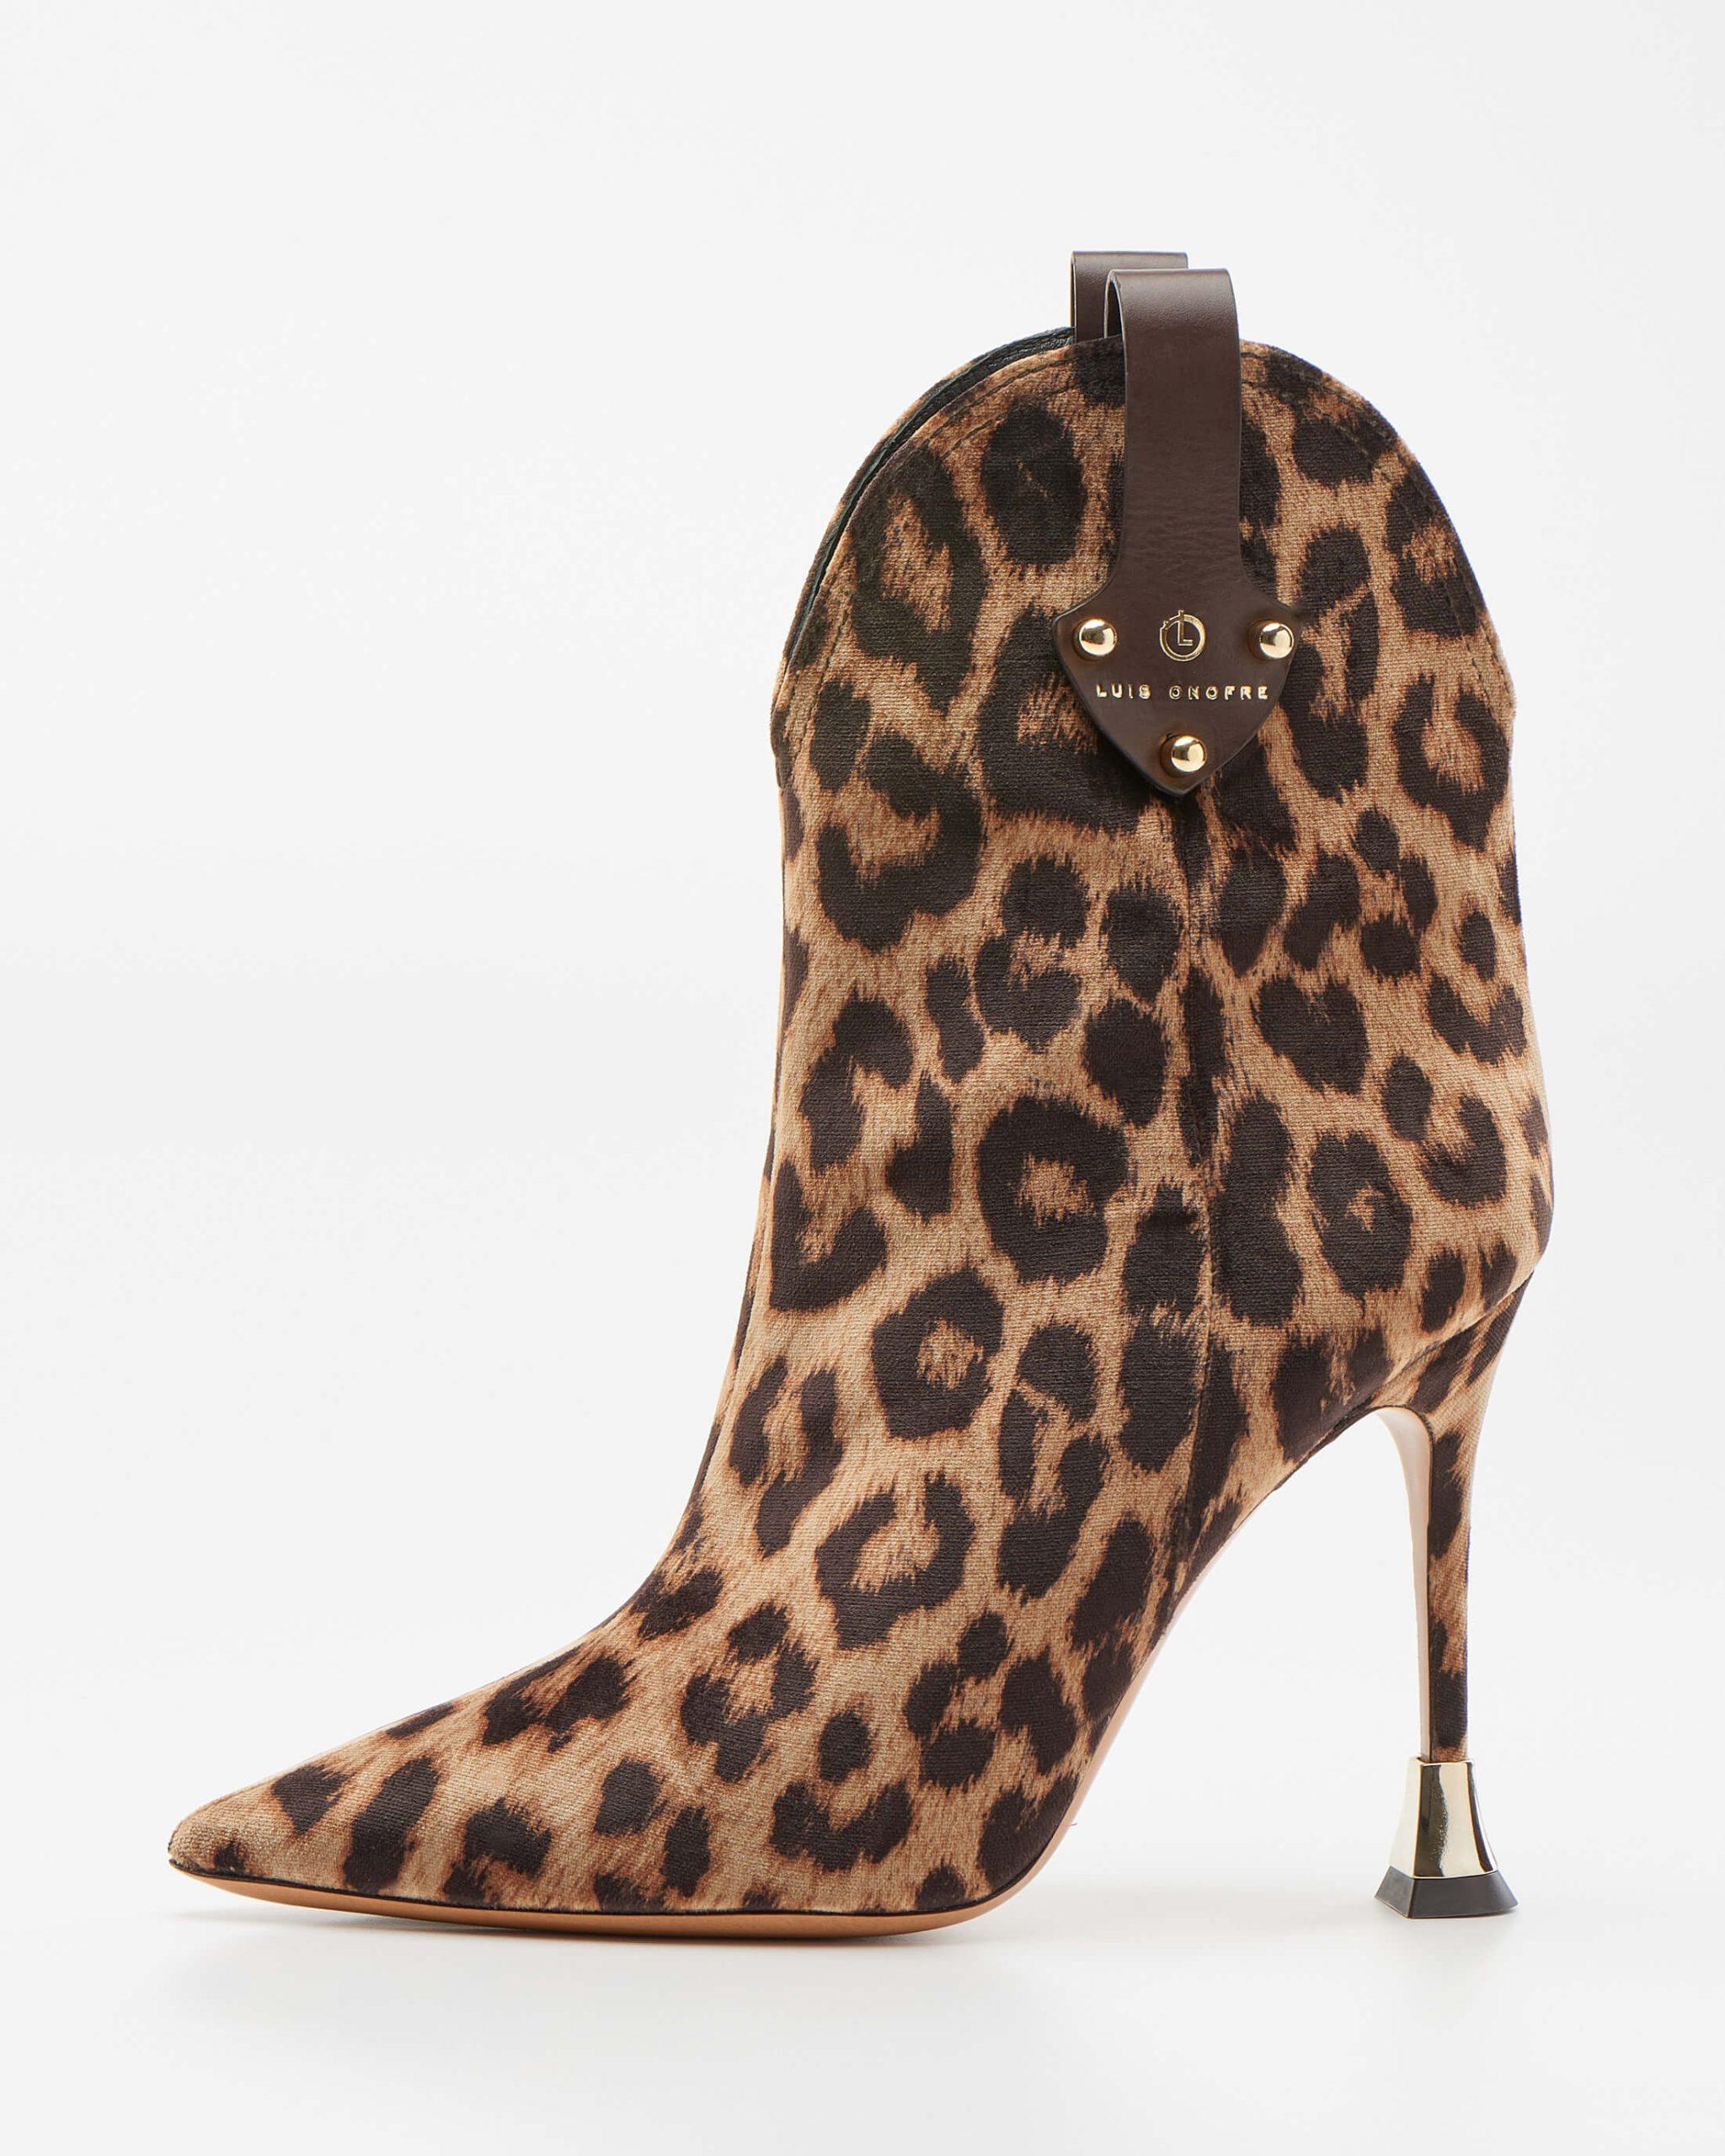 Leopard-print ankle Boots - Luis Onofre Design Shoes - Portuguese